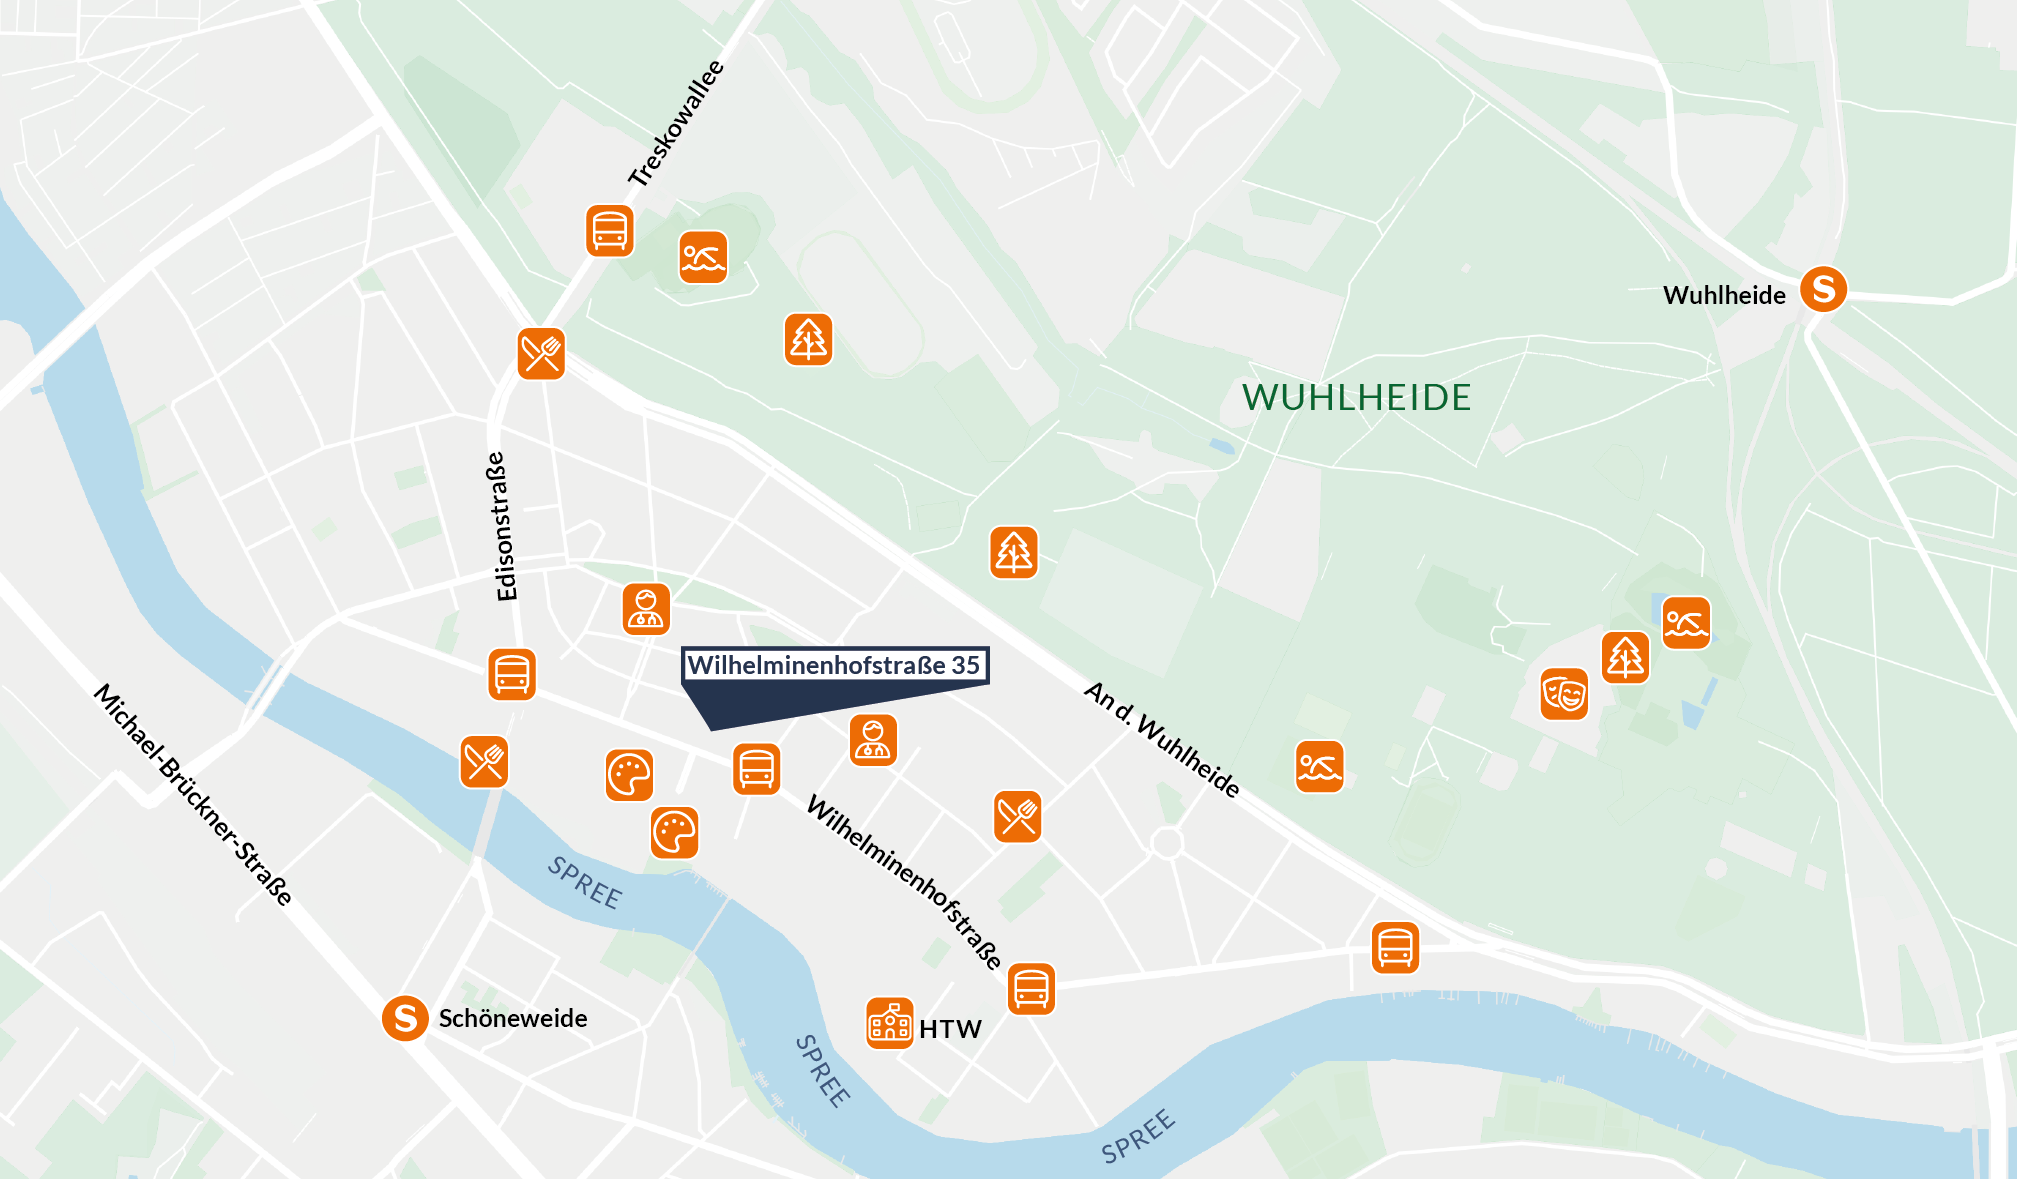 Kartenausschnitt der verschiedenen Sehenswürdigkeiten in der Nähe der Wilhelminenhofstraße